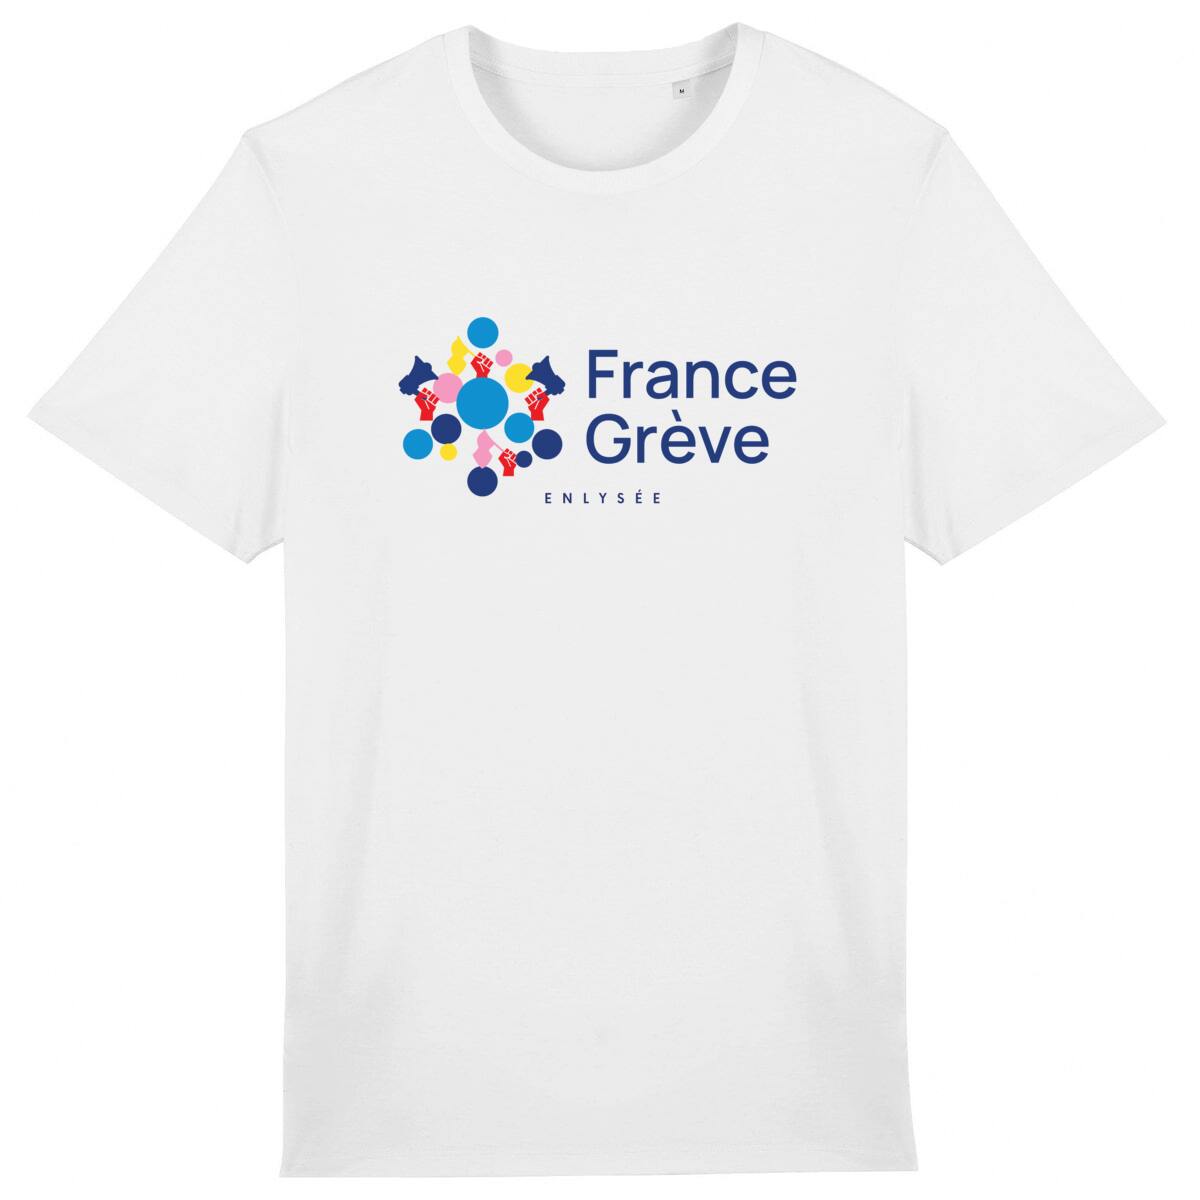 Le T-Shirt France Grève